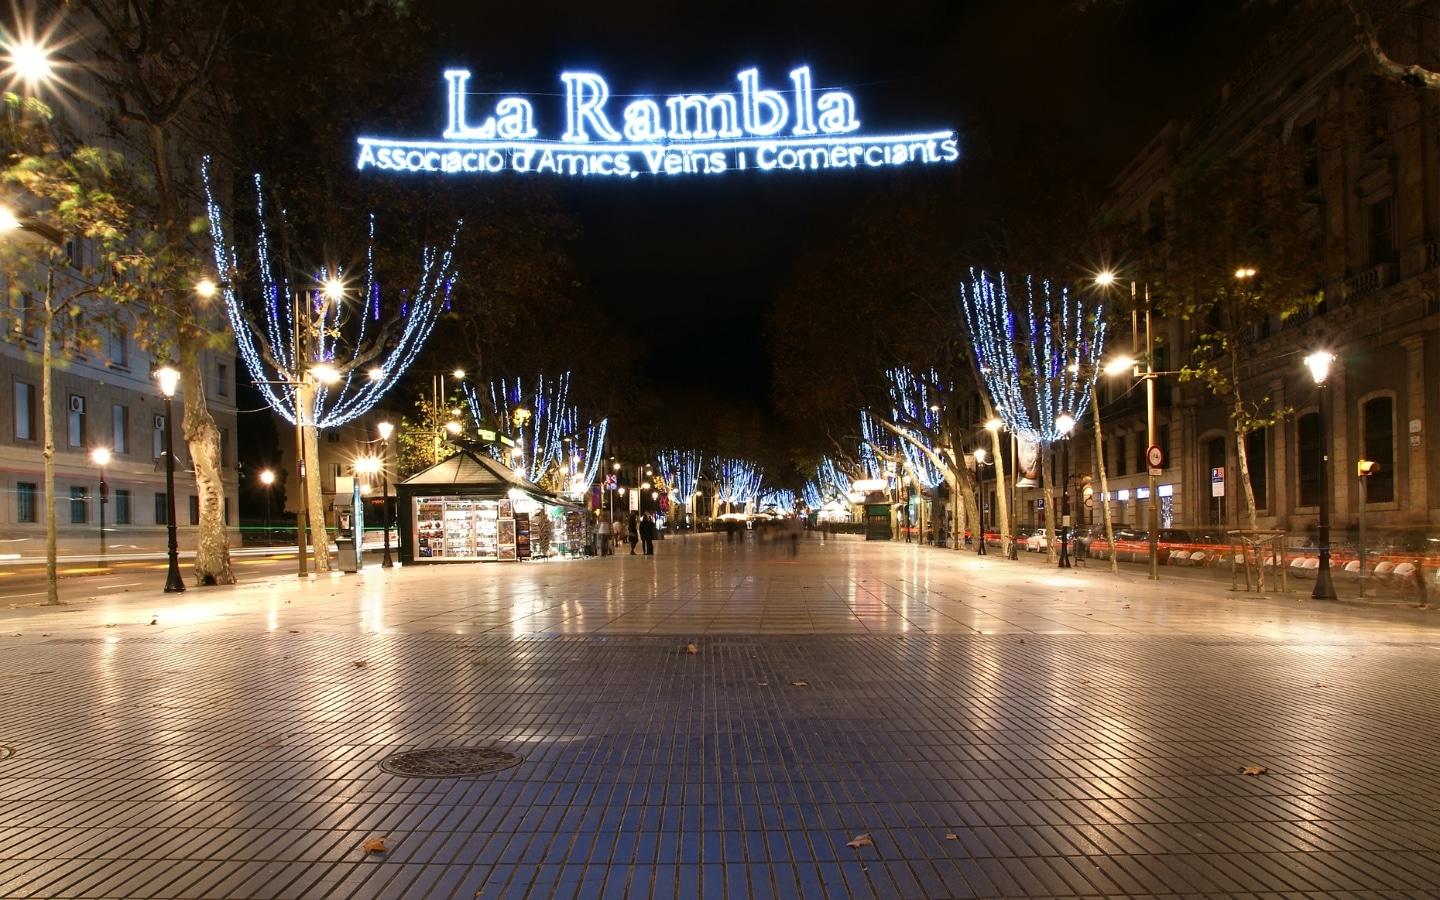 Iconic La Rambla